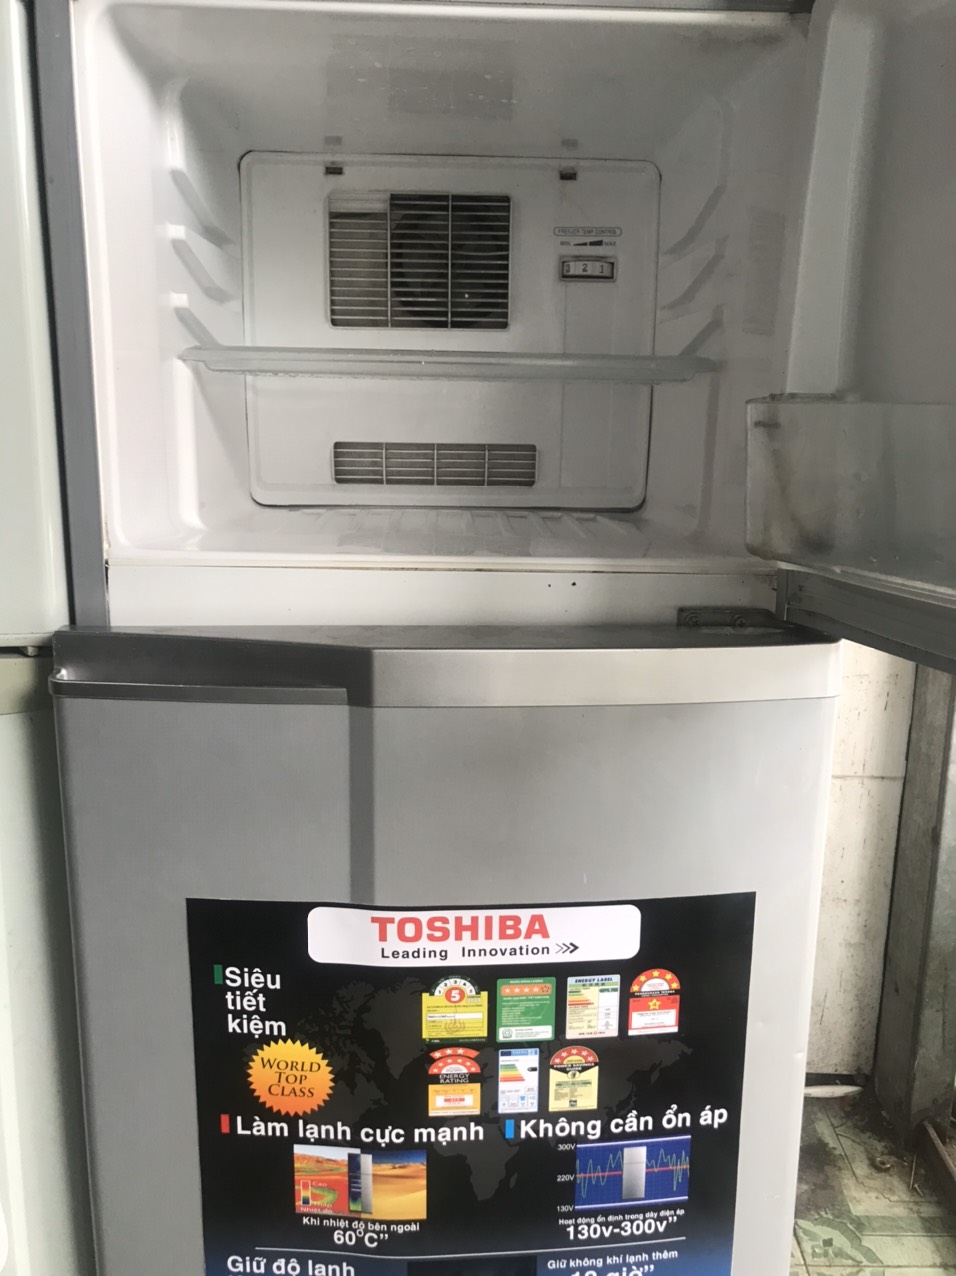 Tủ Lạnh TOSHIBA 130L đời mới nguyên zing 100% ngoại hình máy mới đẹp 97% 2